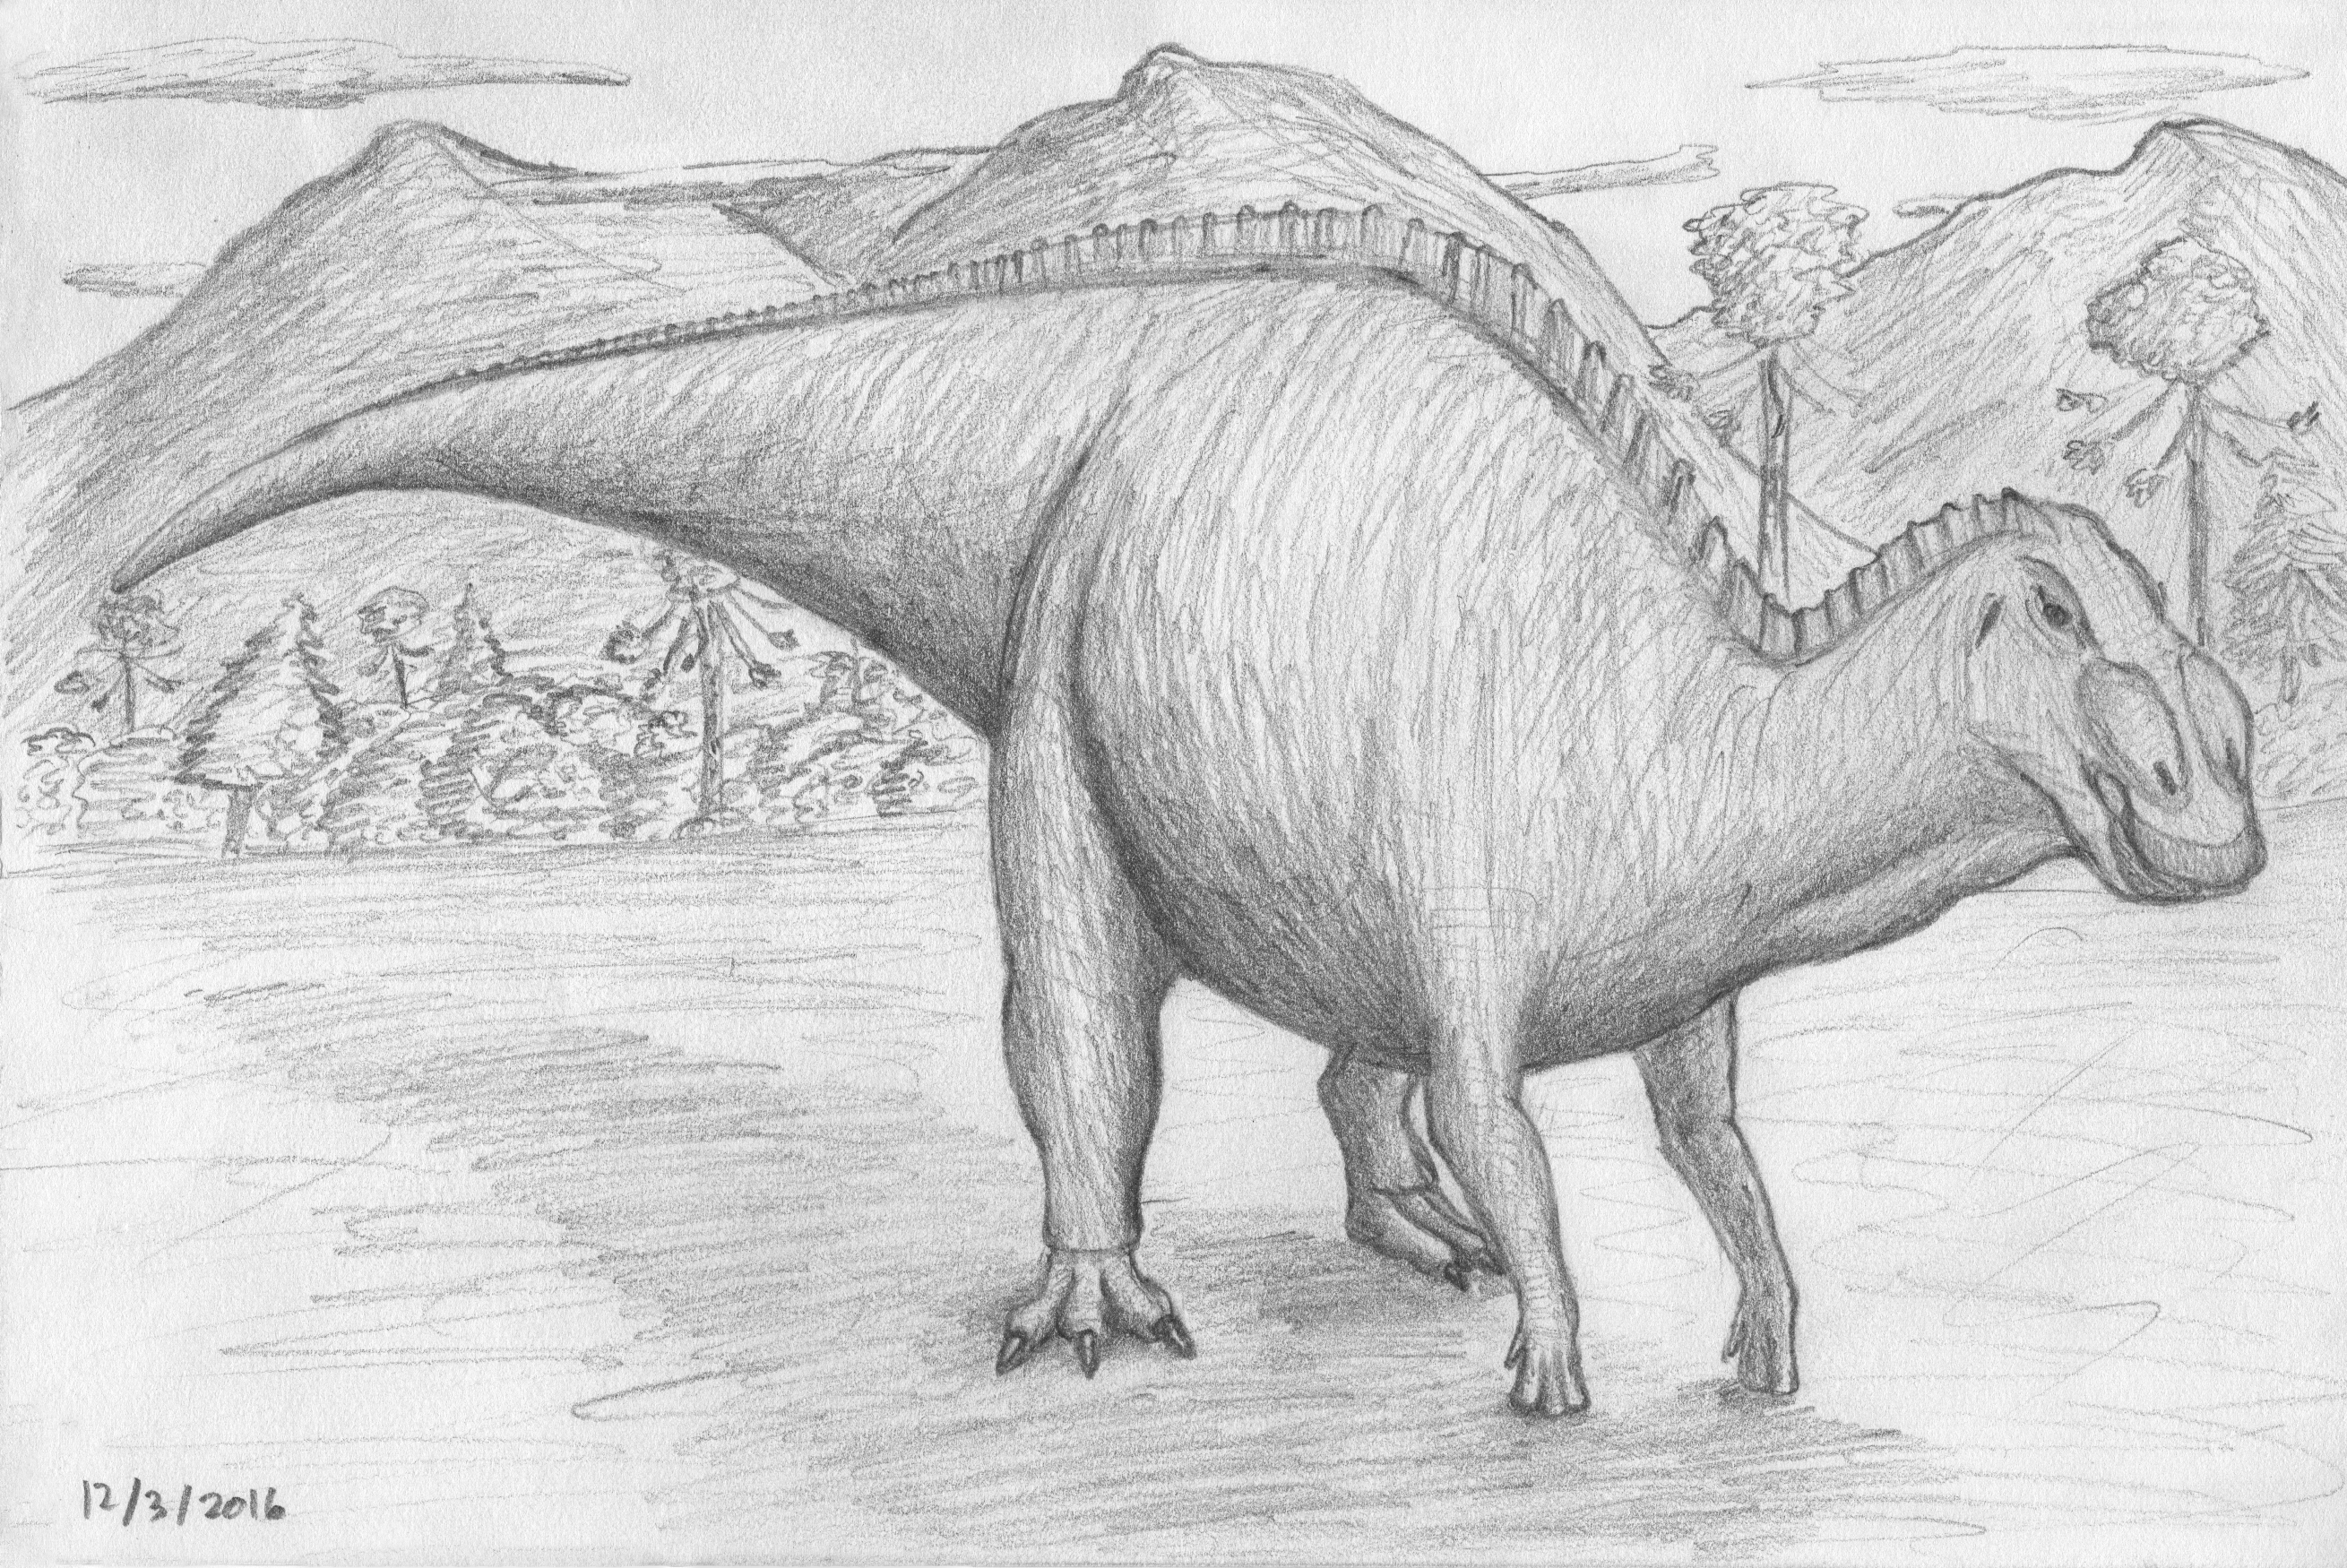 Anatotitan (2016)